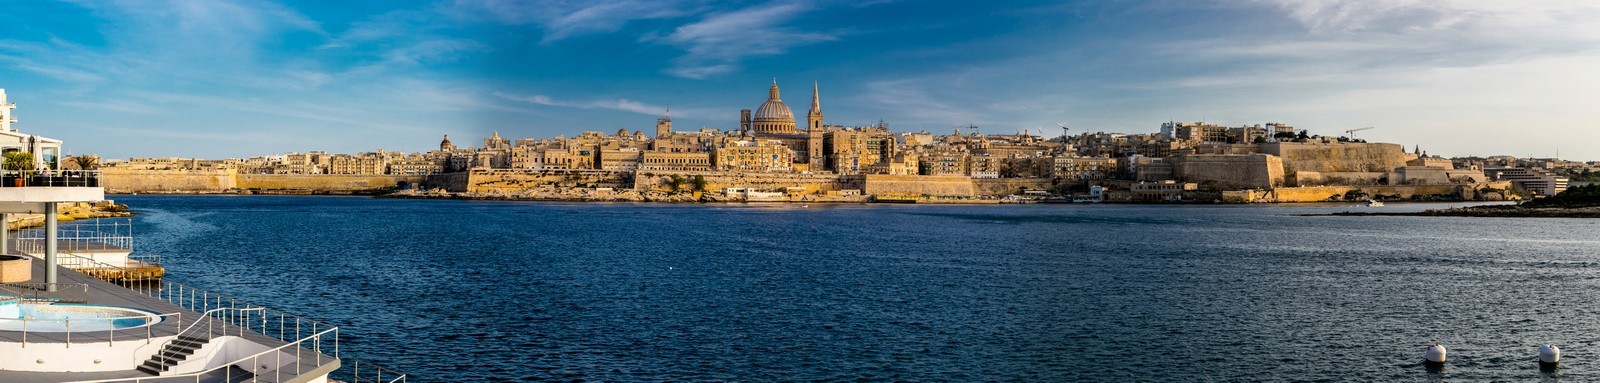 Valletta sea front 1